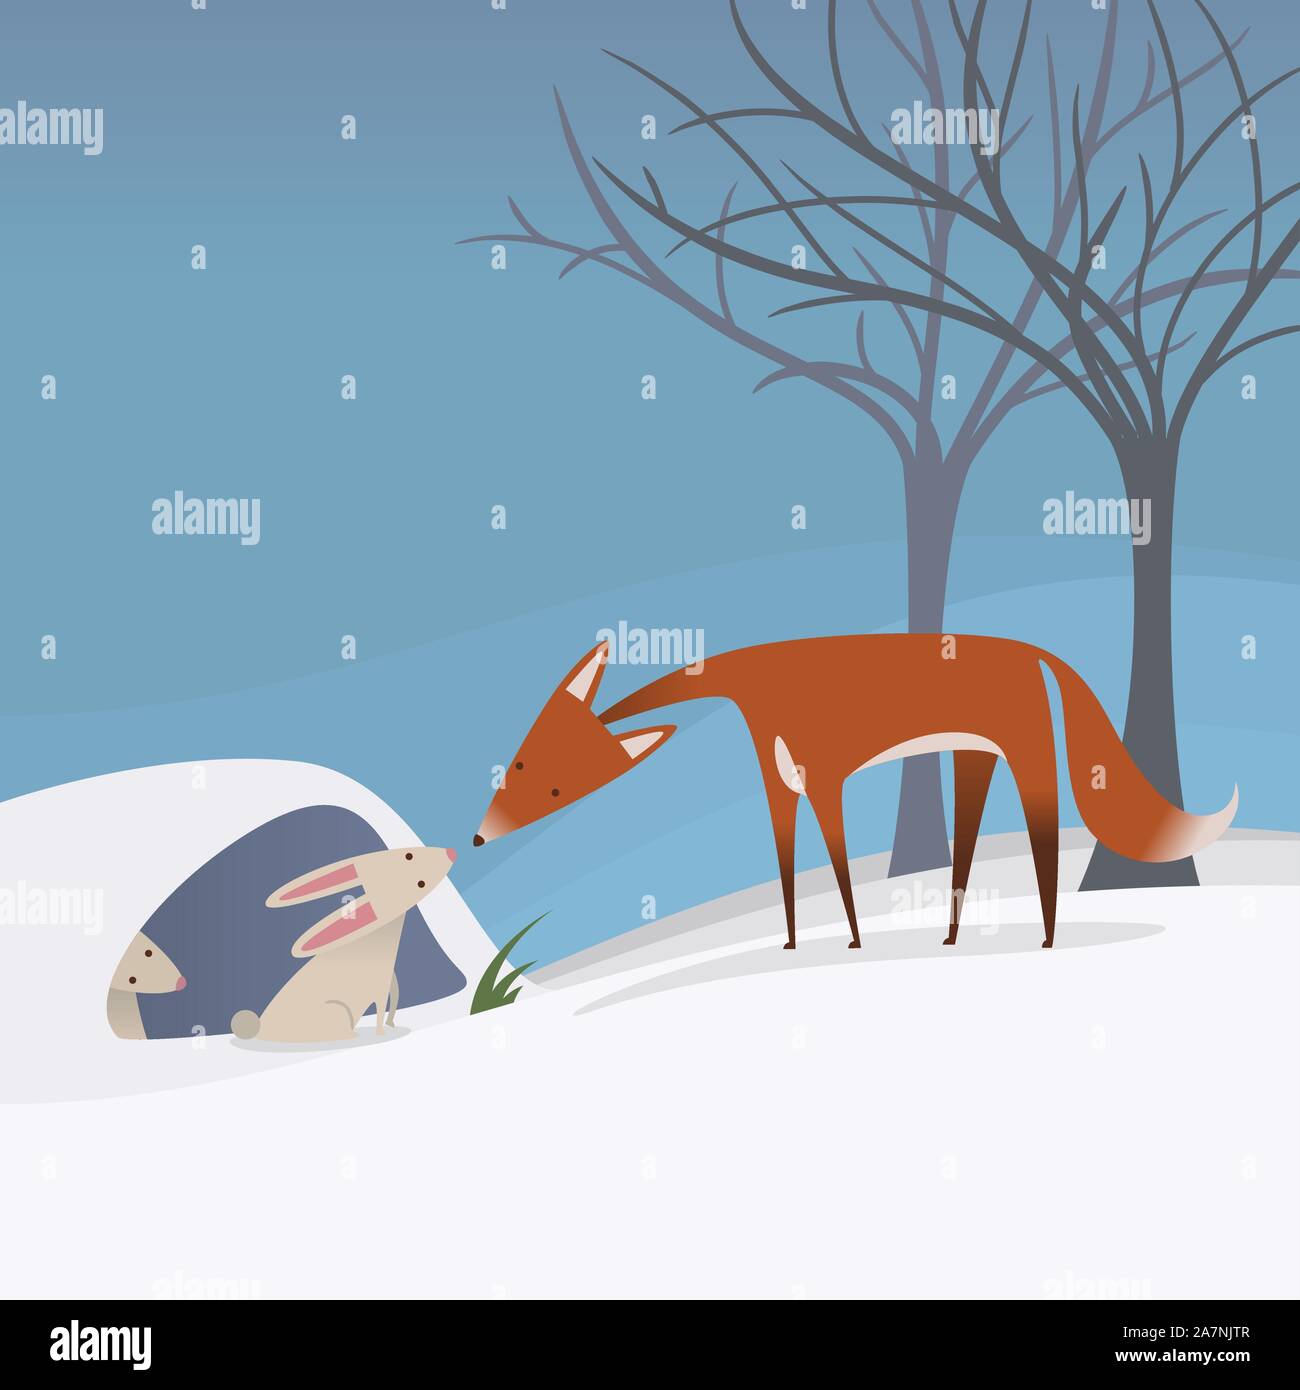 friedliche Szene ein Fuchs und ein Kaninchen zusammen in Winter, blauen Himmel Vektor-Illustration. Stock Vektor